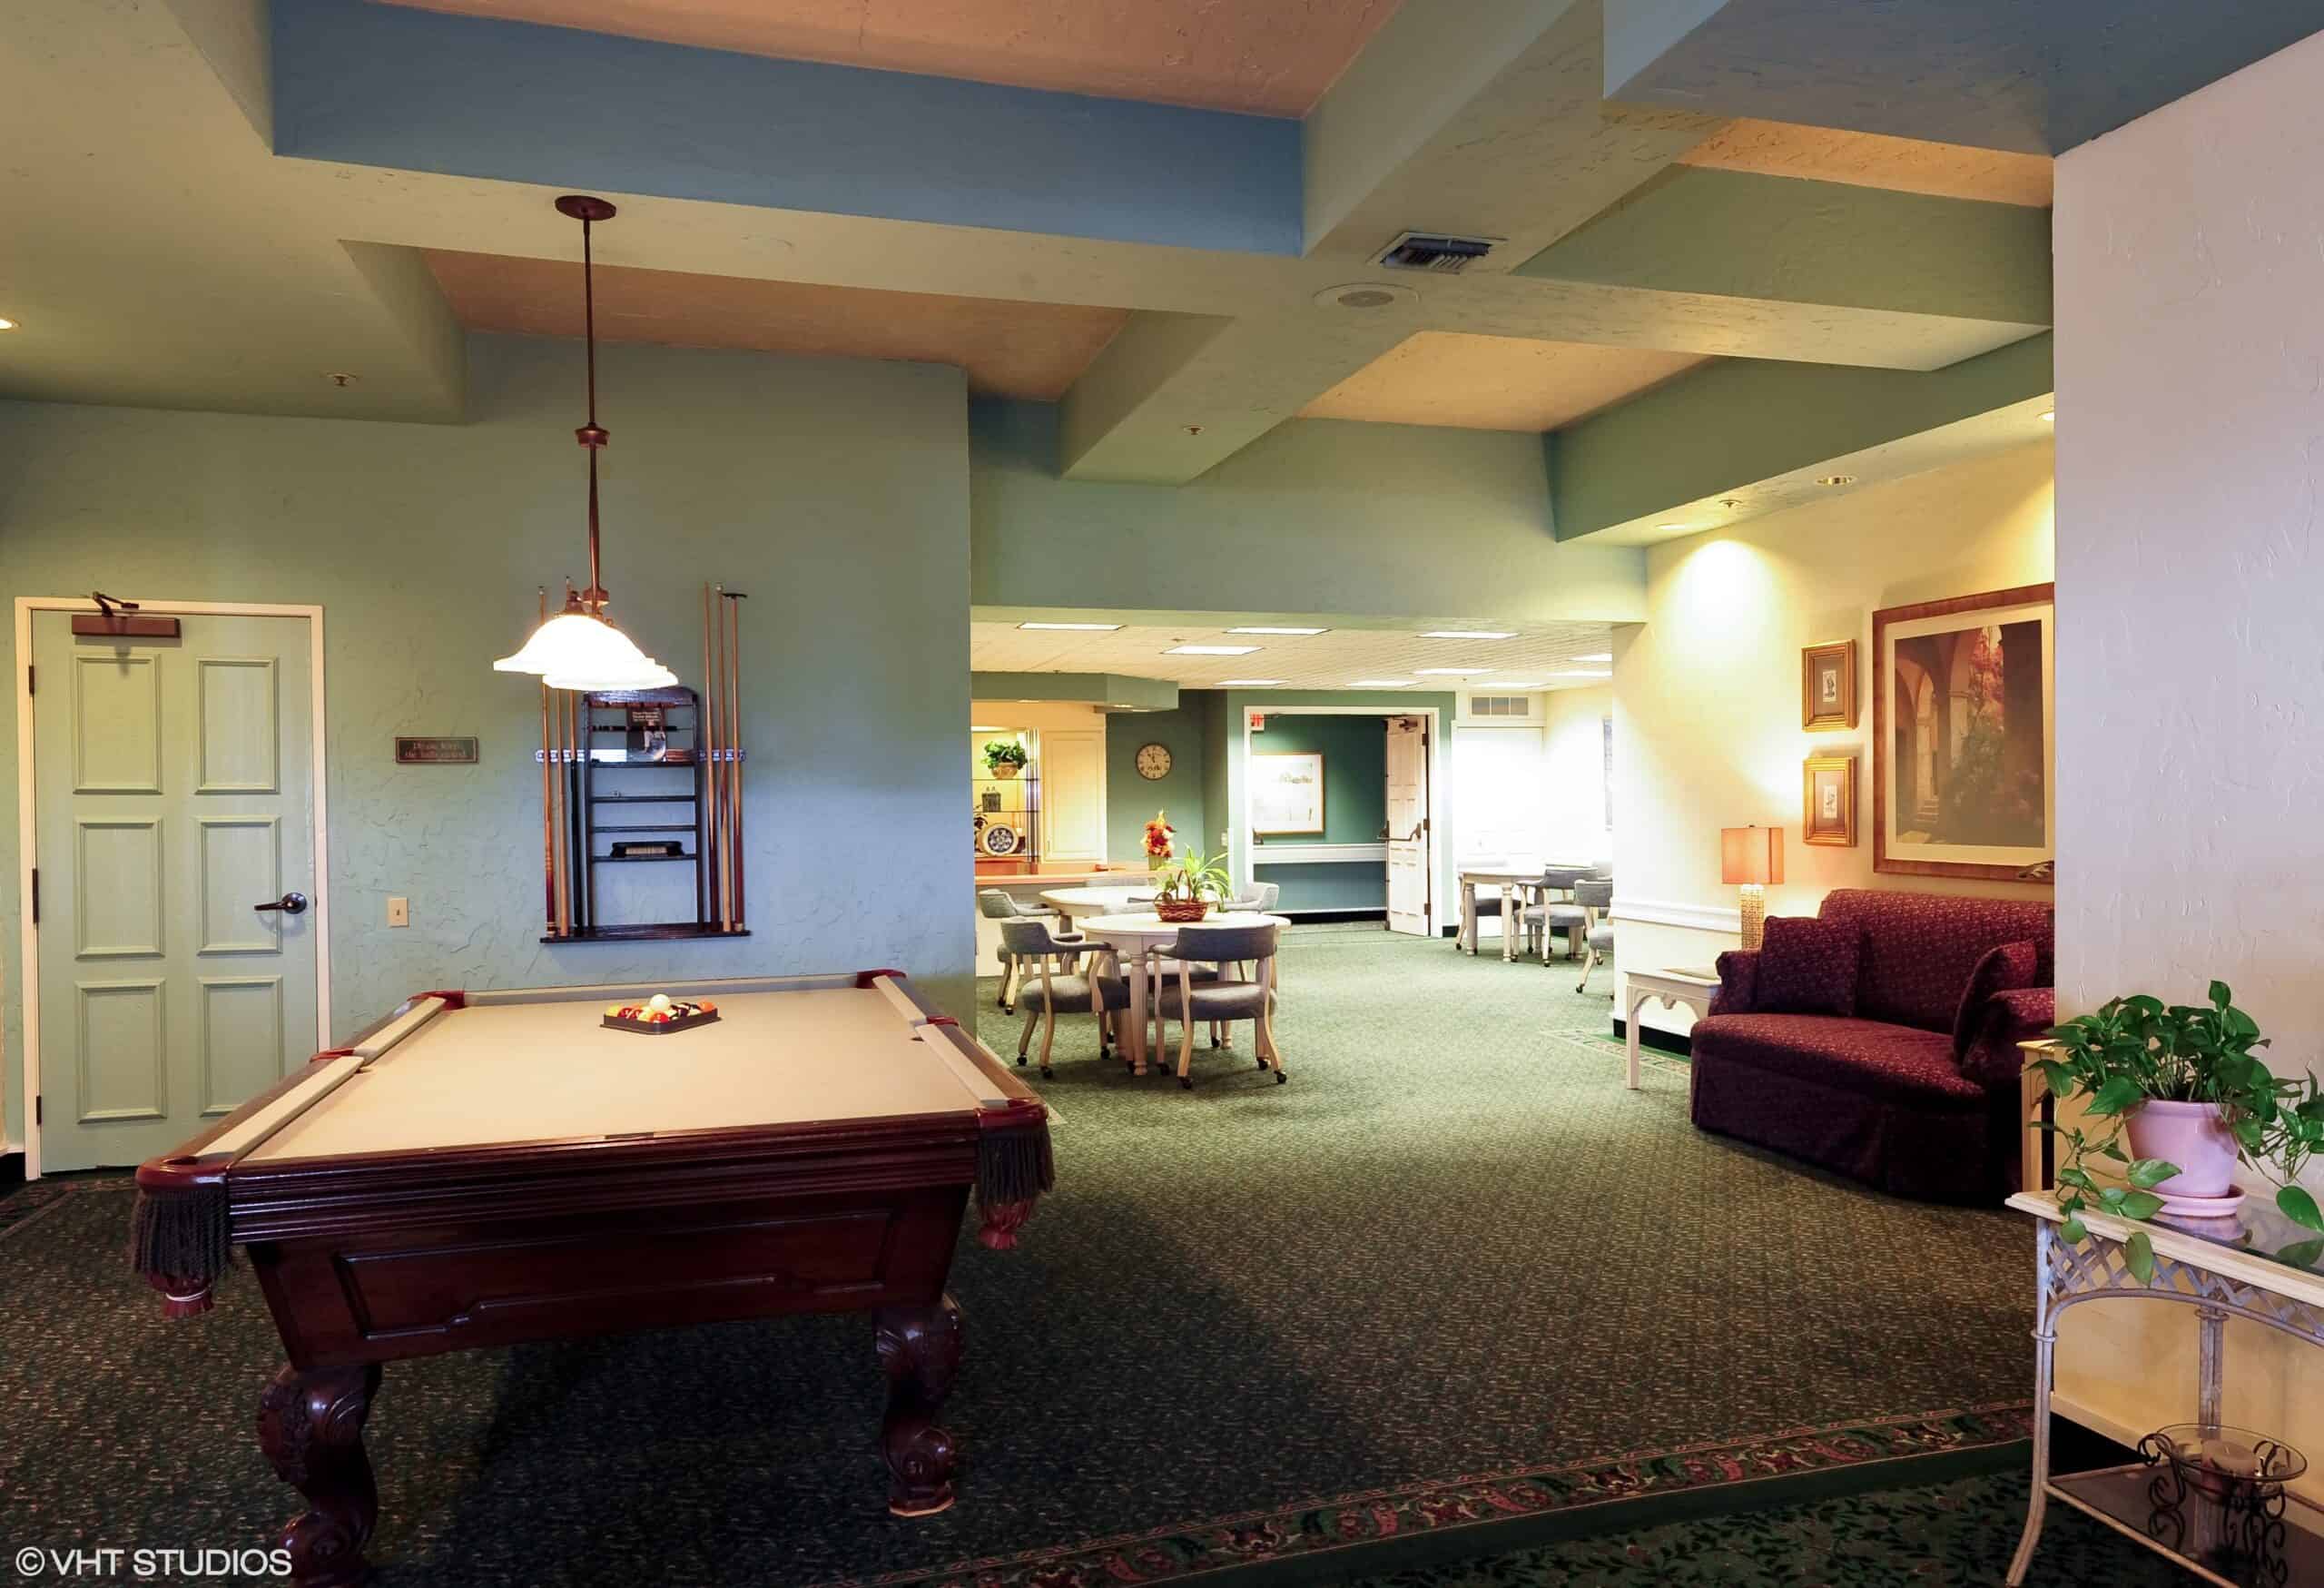 Billiards table and lounge space at the Villa Santa Barbara, a senior living community in Santa Barbara, California